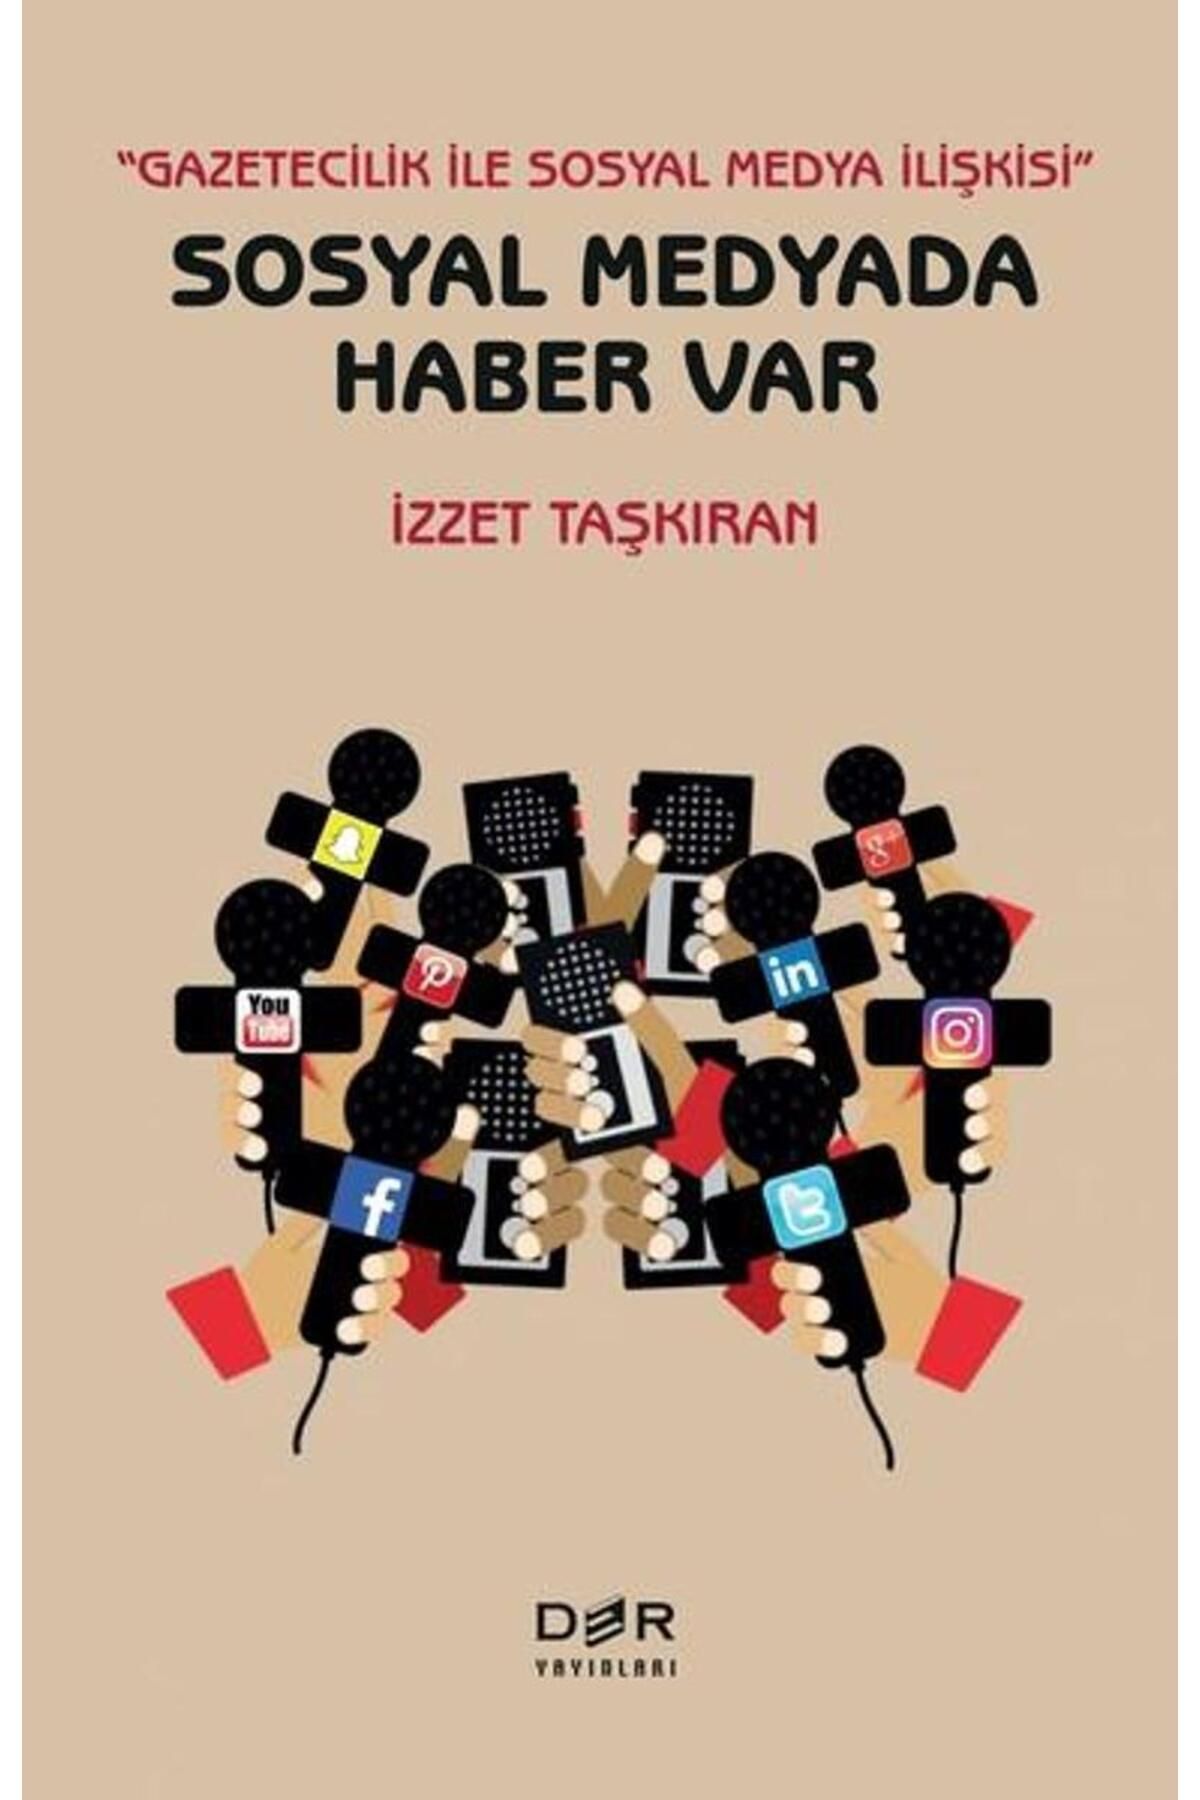 Der Yayınları Sosyal Medyada Haber Var